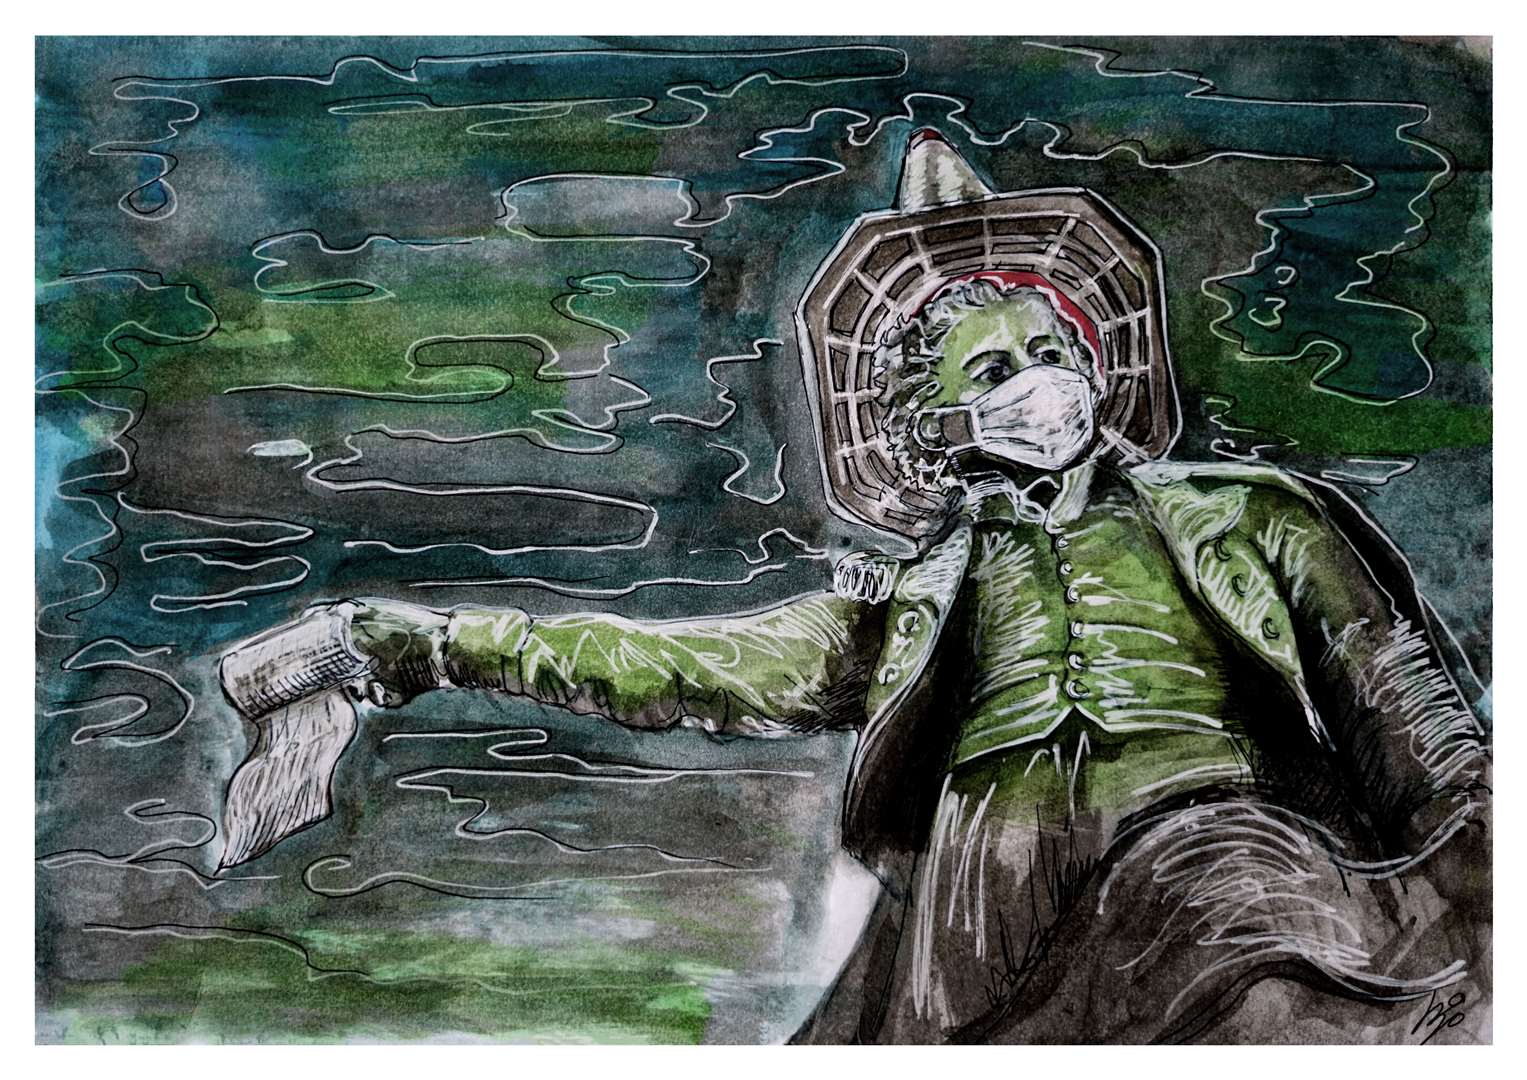 'A very medway Apocalypse' copyrighted by Luna Zsigo, who runs Explore and Draw